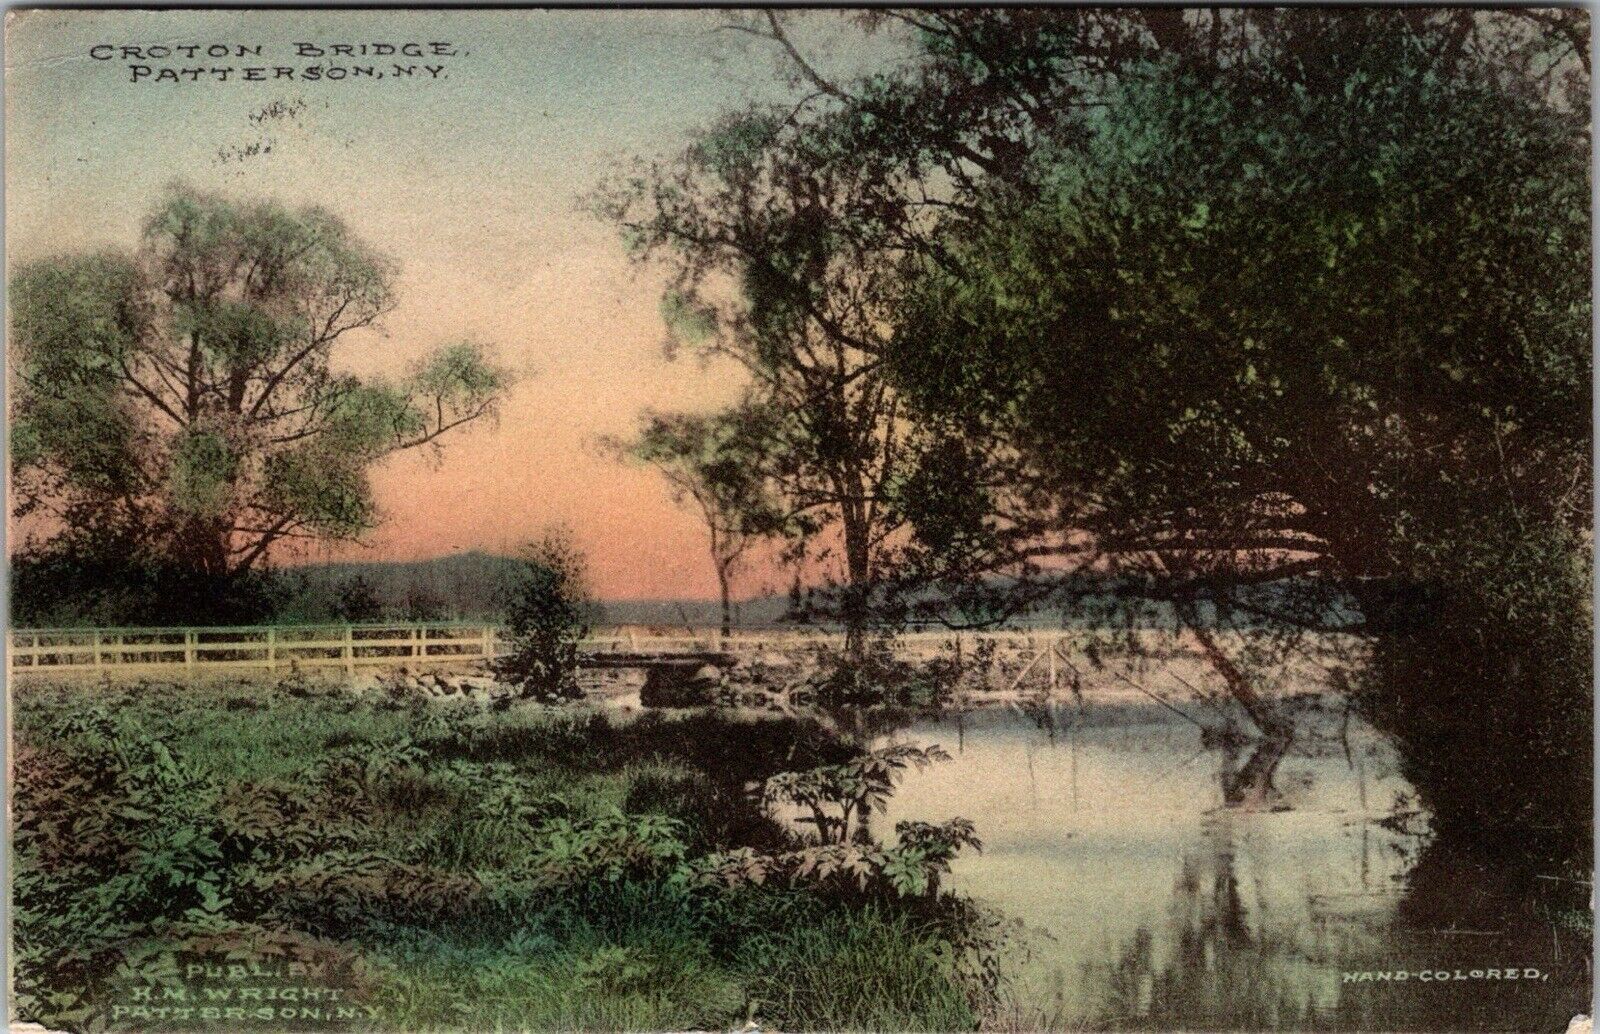 1914 Patterson New York Croton Bridge Postcard Hand Colored PC3